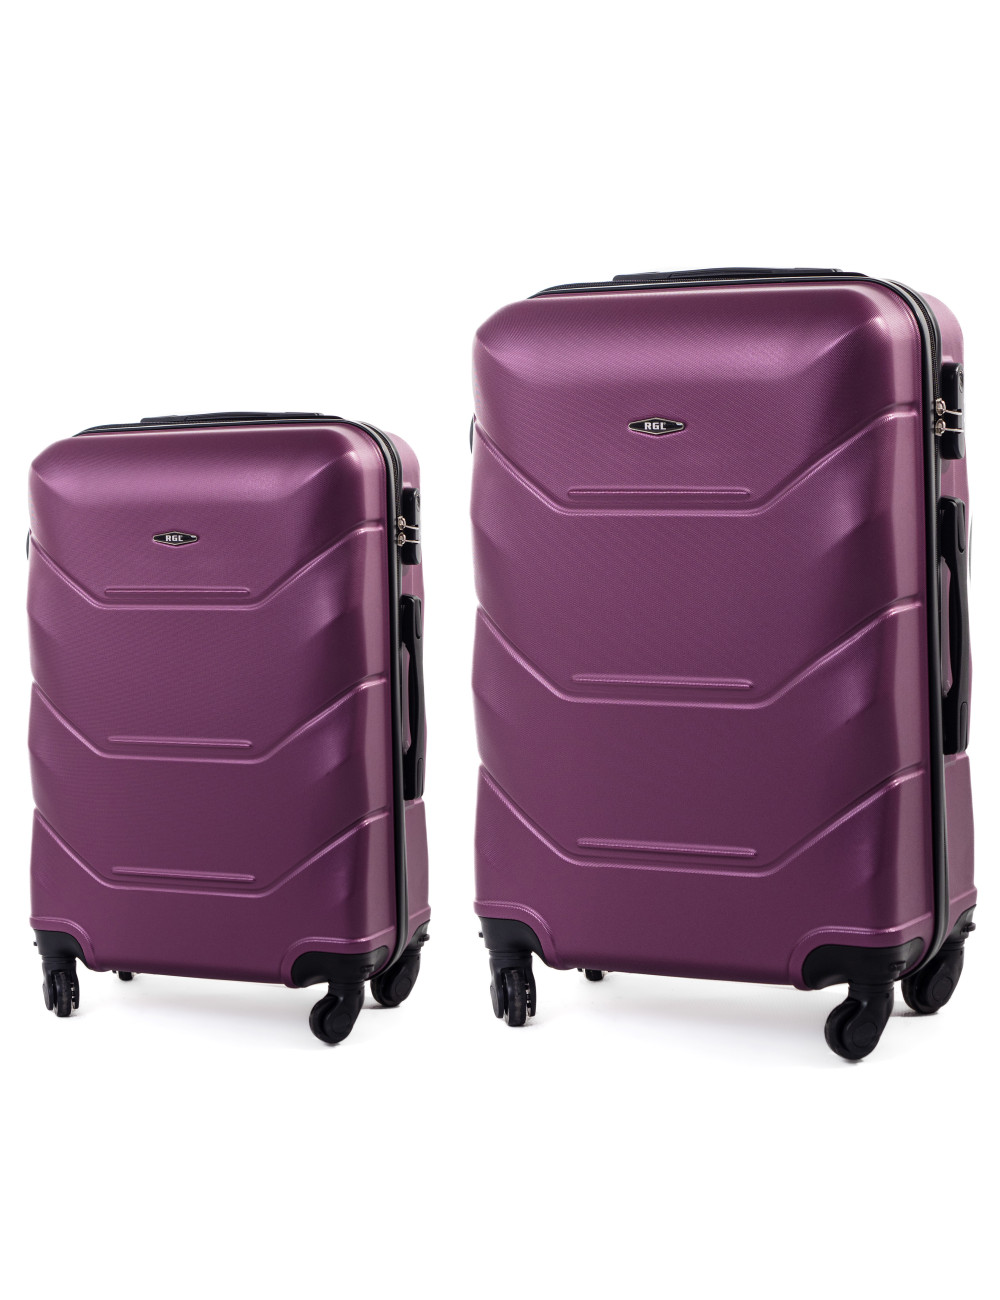 720 RGL zestaw walizek 2w1 L+XL - śliwka